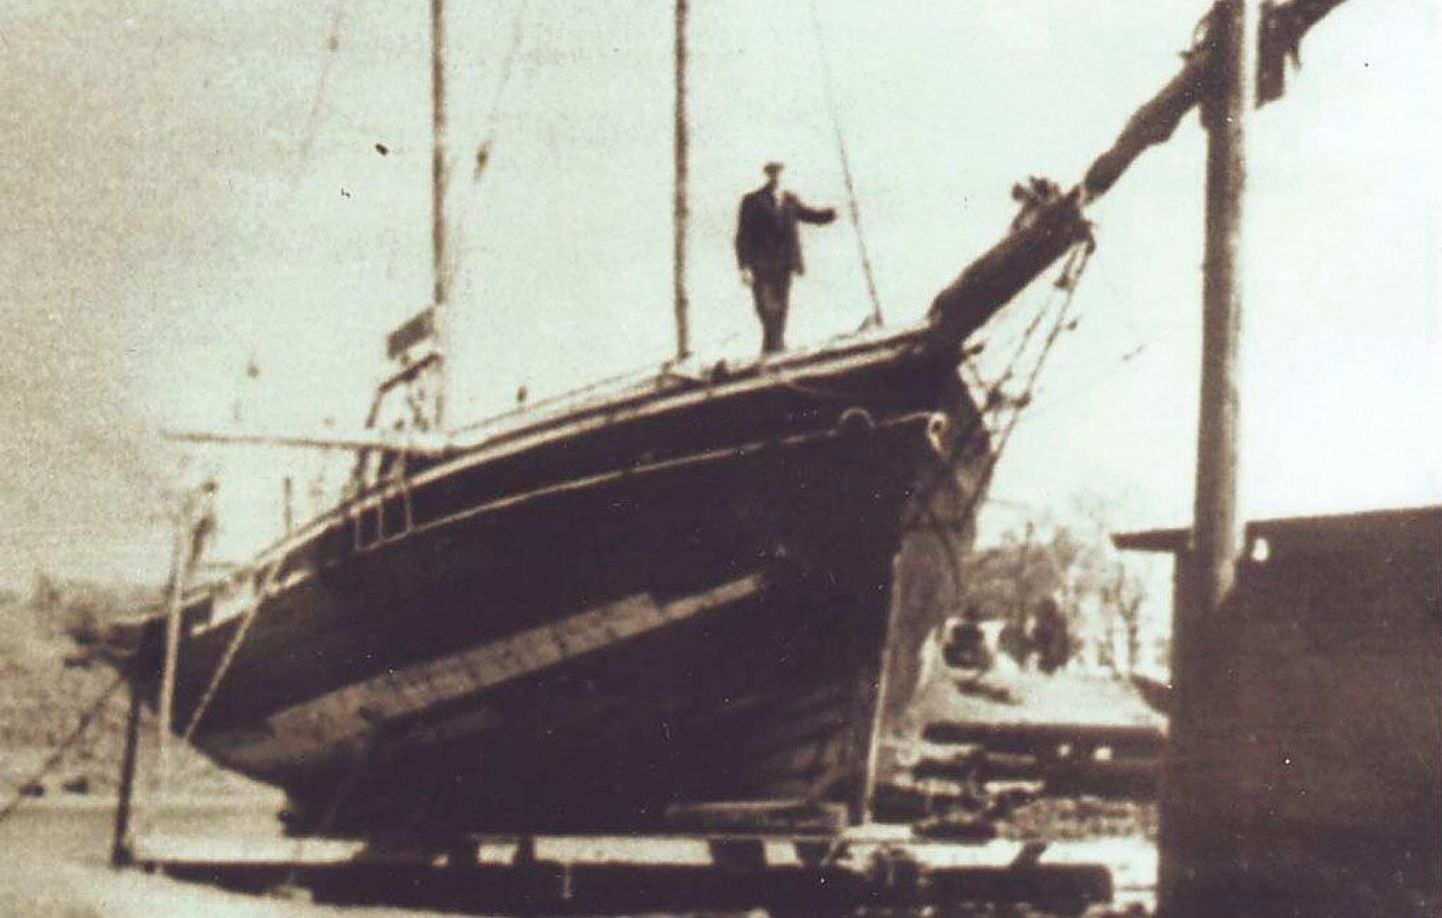 Kaljas Manni Pärnu sadamas remondis. 1944 pääses temaga Rootsi laevatäis põgenikke, alus ise hävis.